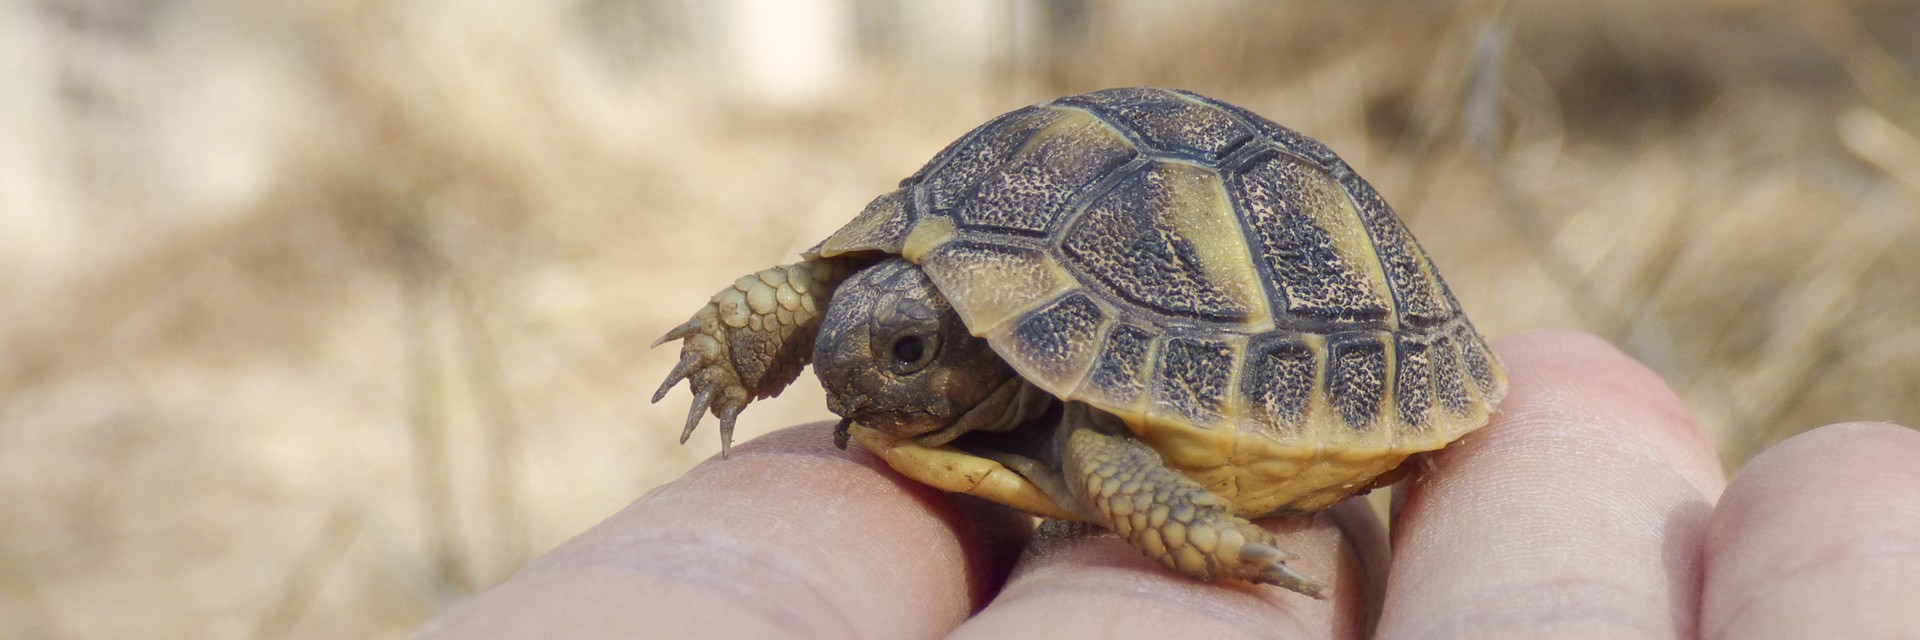 Reserva genètica i cria en semi llibertat de tortuga mediterrània